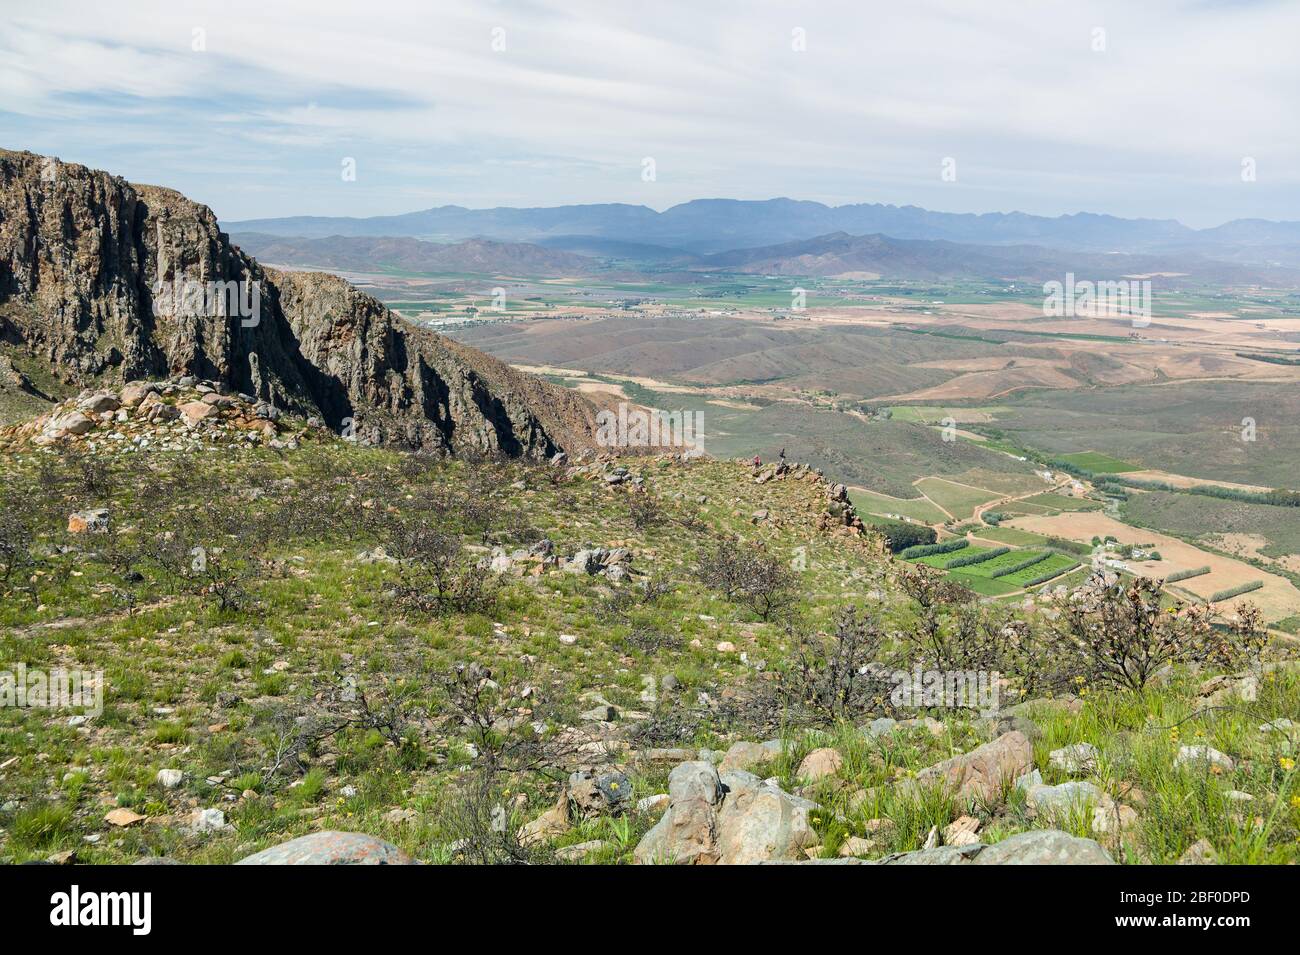 Il sentiero escursionistico di Bloupunt si estende per quasi sedici chilometri sulle montagne di Montagu, Capo Occidentale, Sud Africa con vista panoramica, anfratti, monte Foto Stock